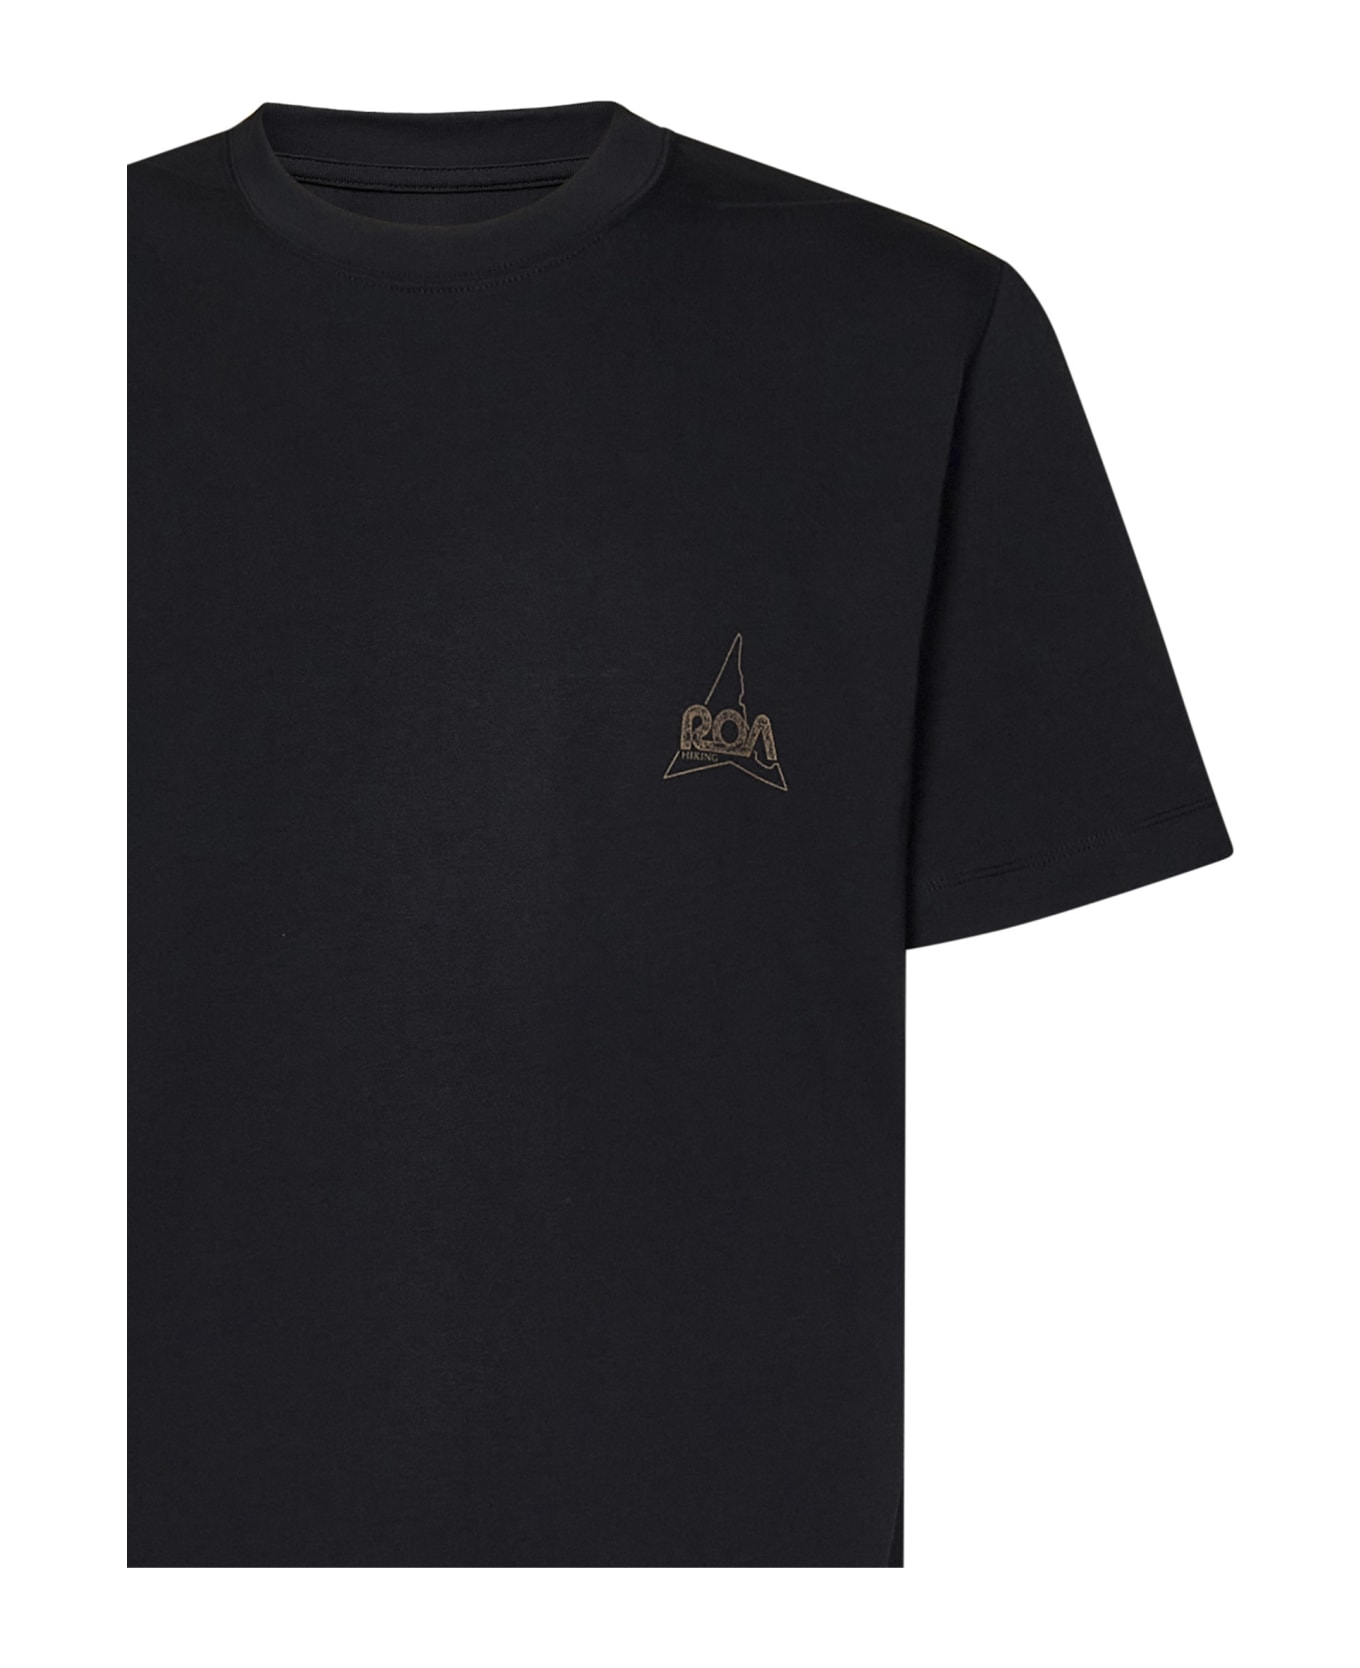 ROA T-shirt - Black